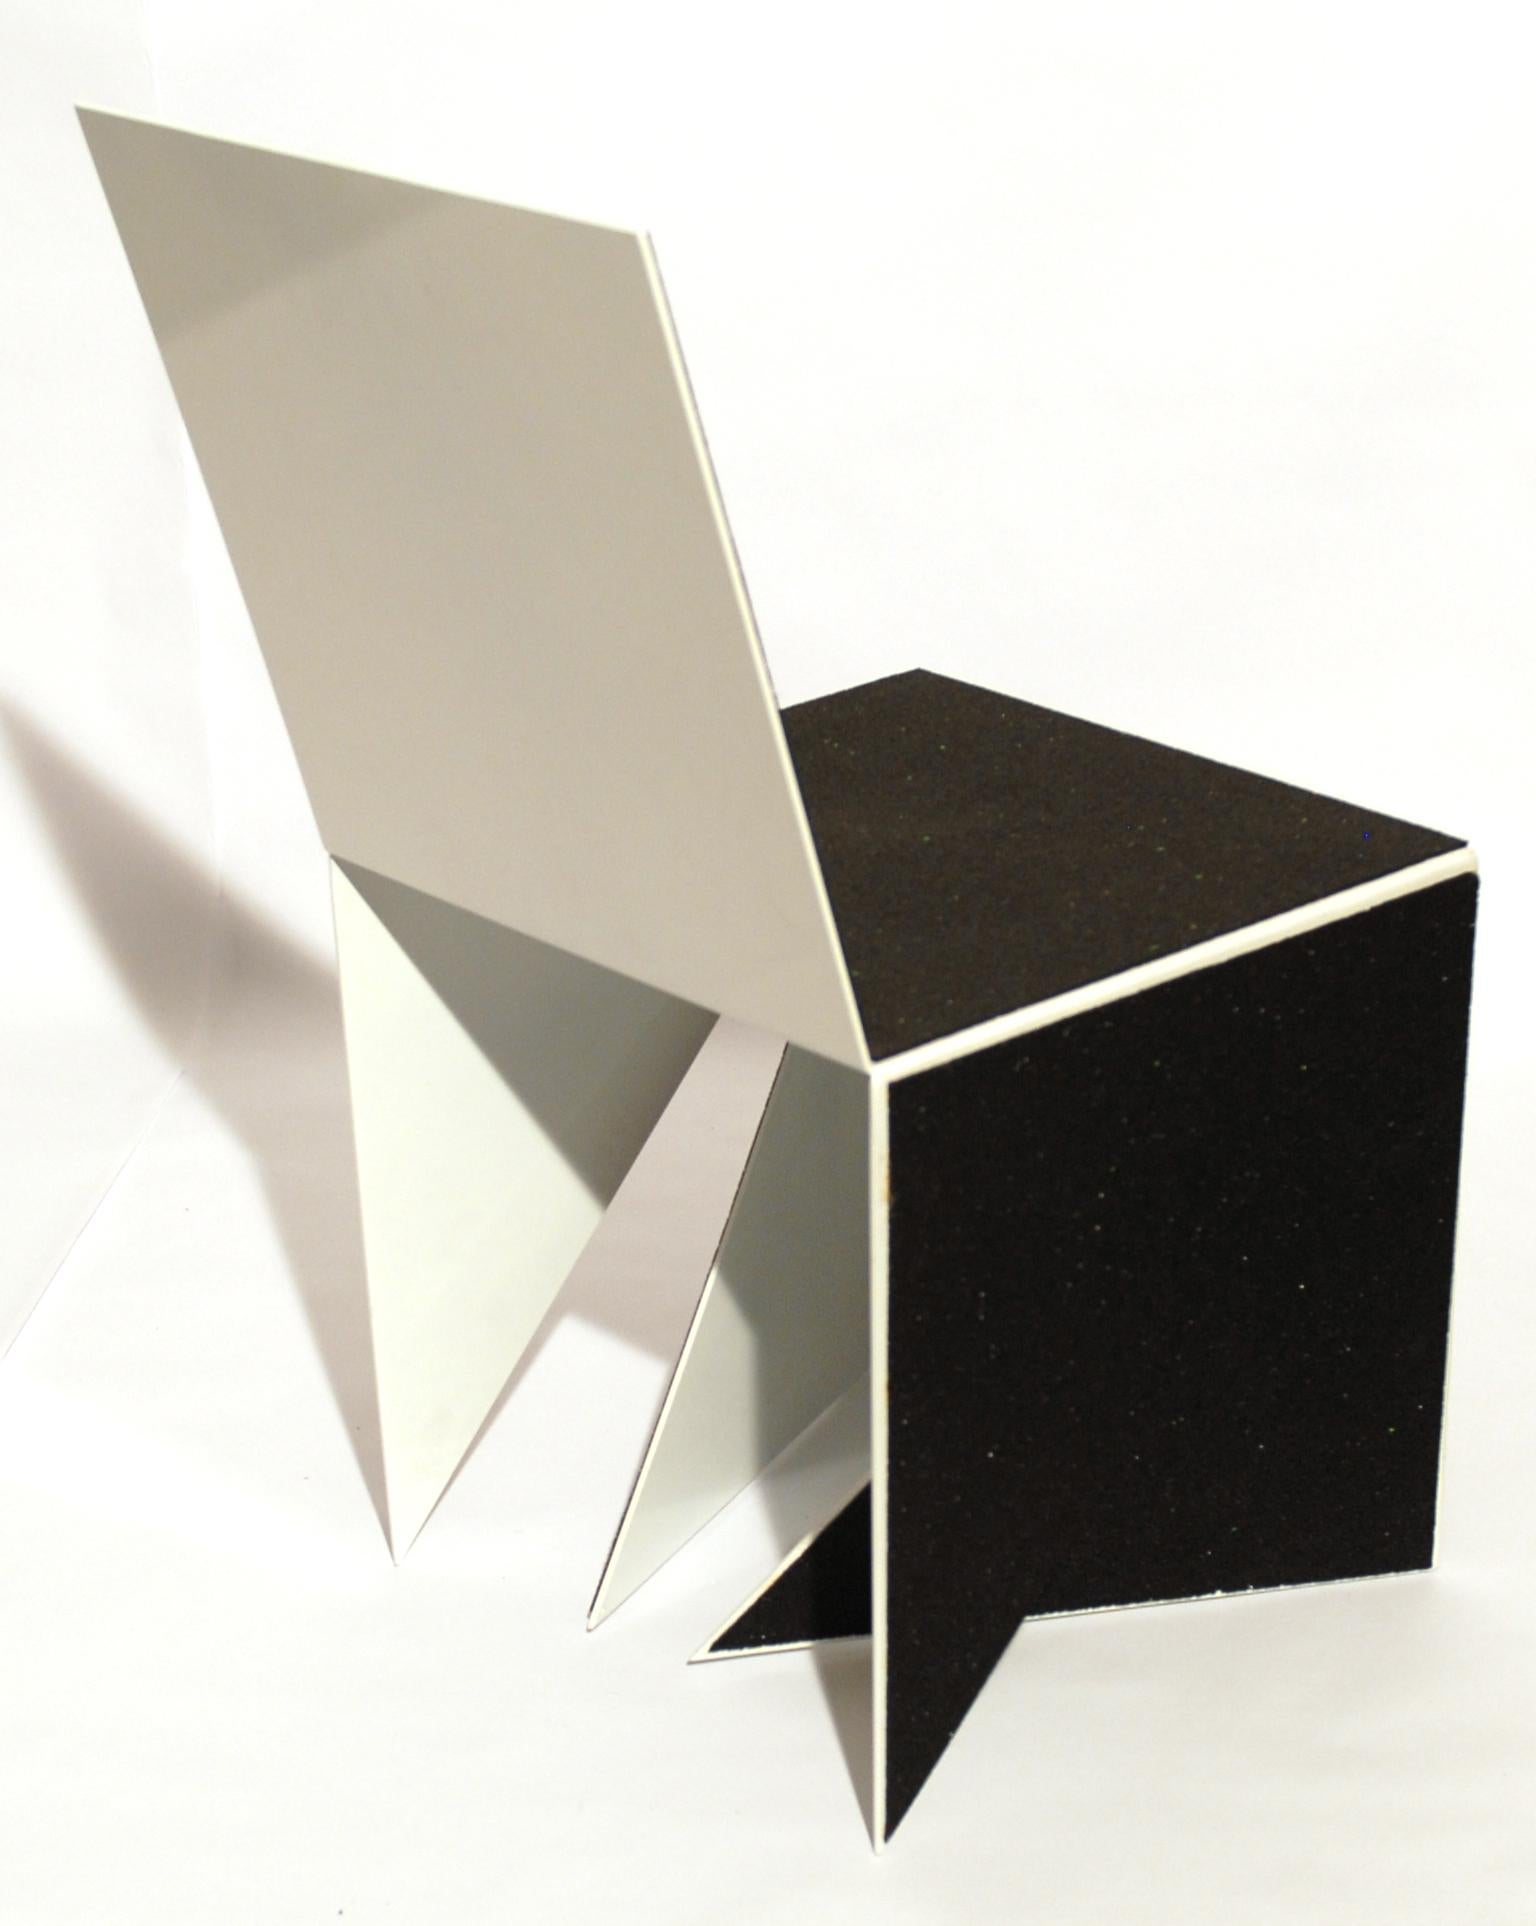 Casulo Cube n° 2 de Mameluca
Matériau : Peinture électrostatique en aluminium, couverture en caoutchouc recyclé.
Dimensions : D 45 x L 45 x H 90 cm
Disponible également en différentes dimensions.

Ouvrir un cube et le transformer en plan a été le